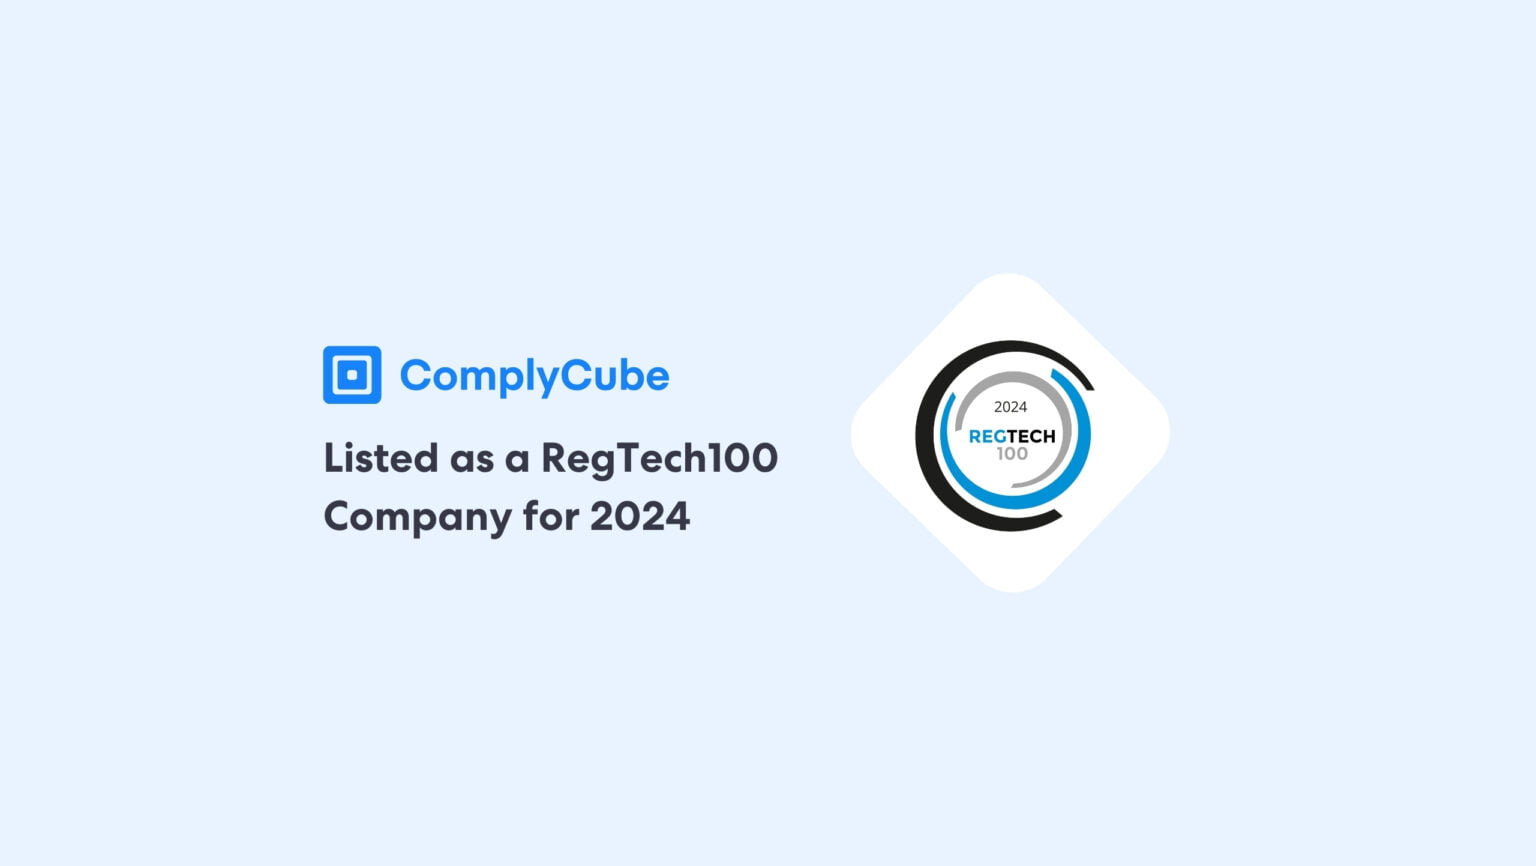 Elenco ComplyCube RegTech100 2024